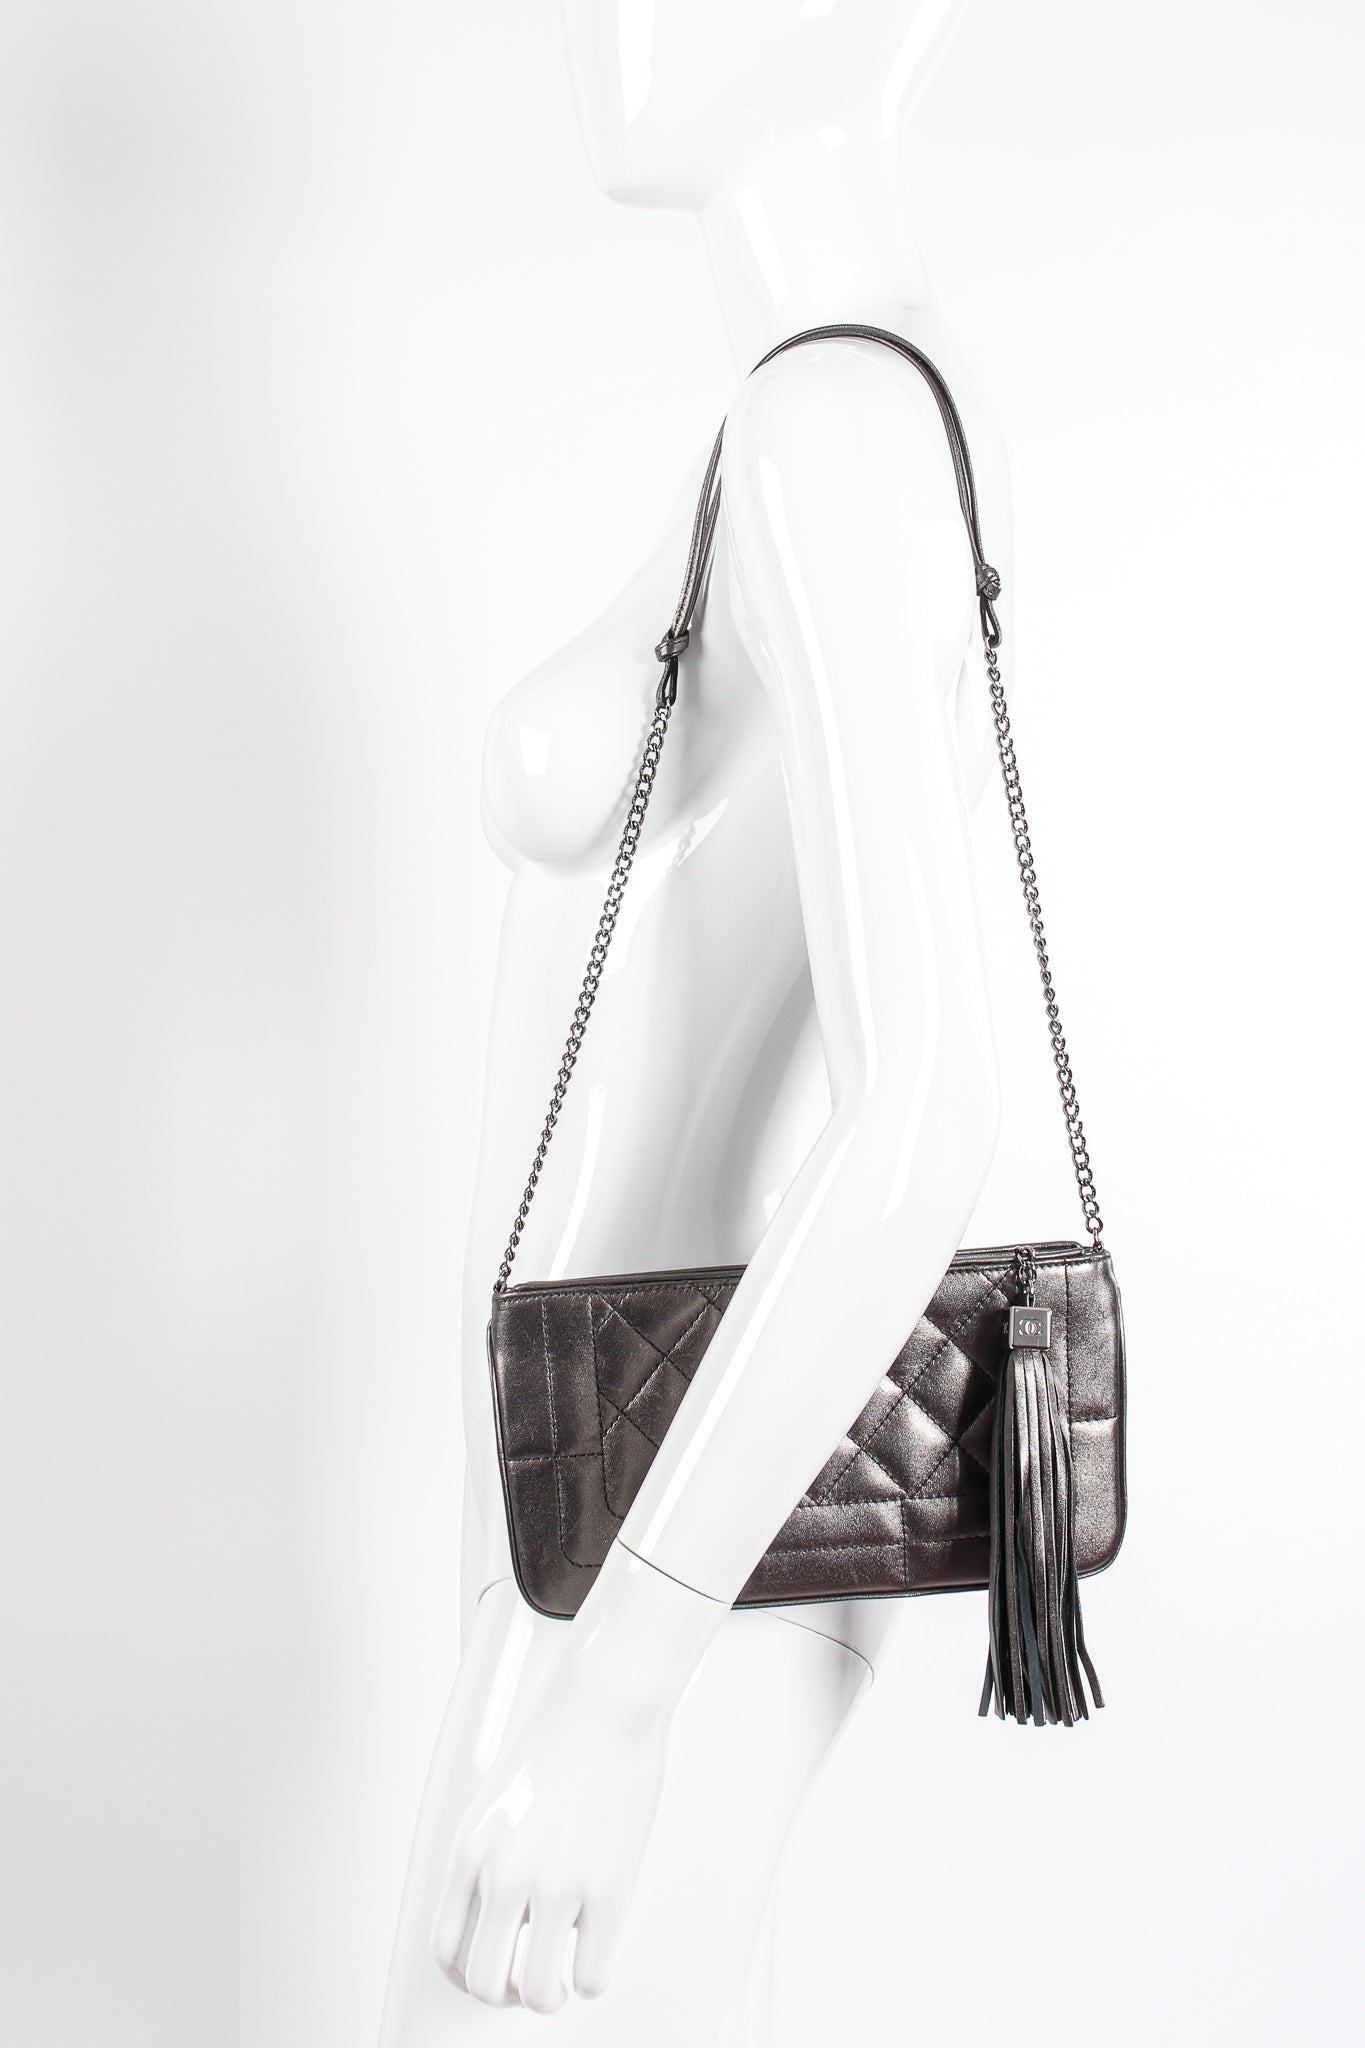 Vintage Chanel 2004 Metallic Quilted Tassel Shoulder Bag on Mannequin at Recess Los Angeles